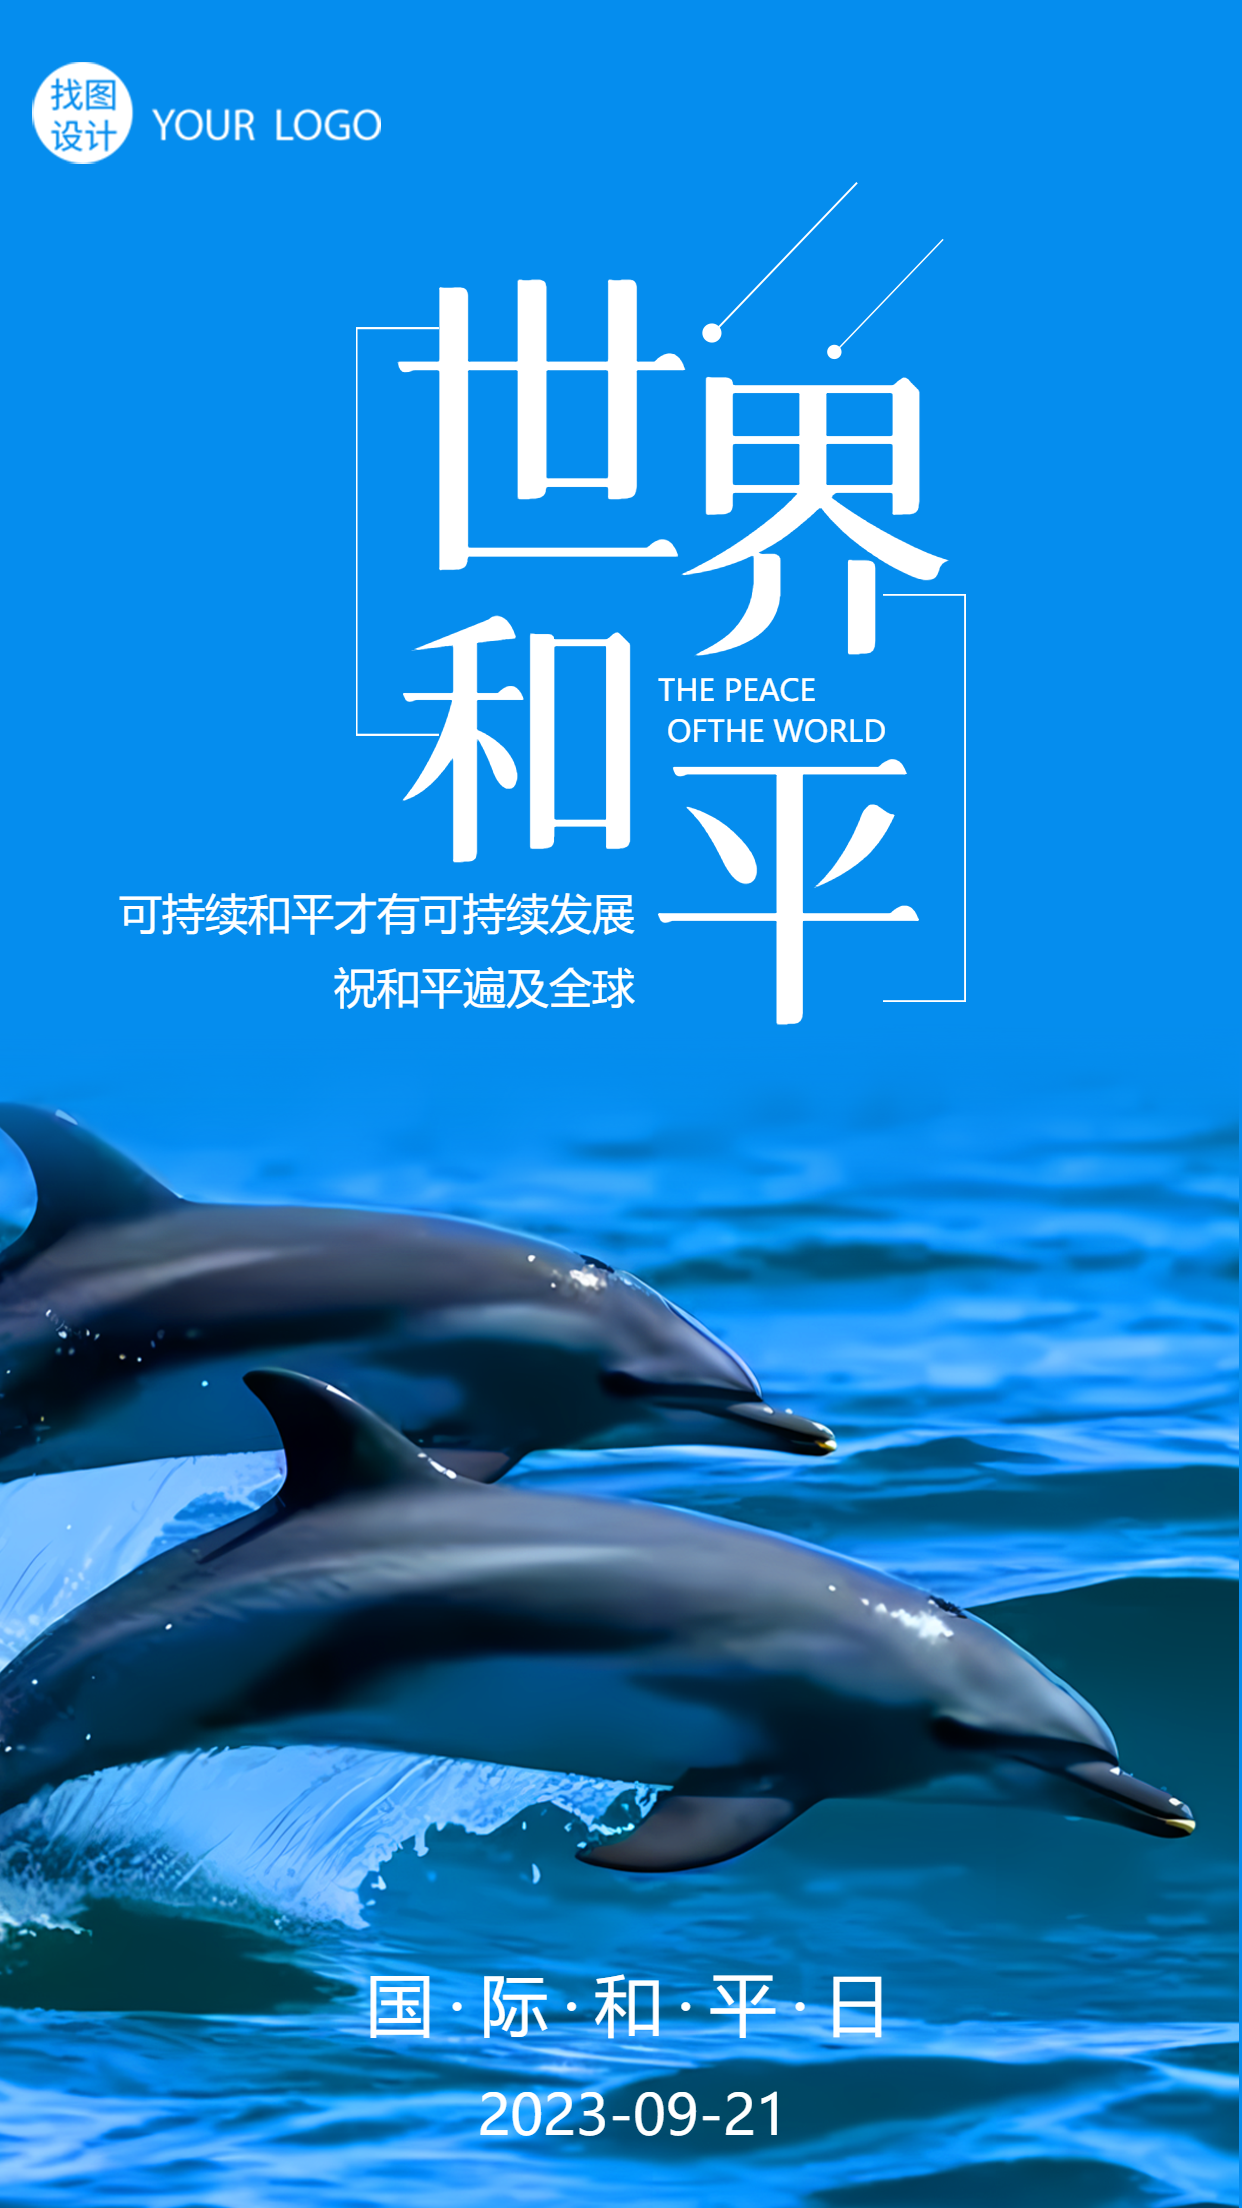 9月21日国际和平日海豚实景宣传手机海报